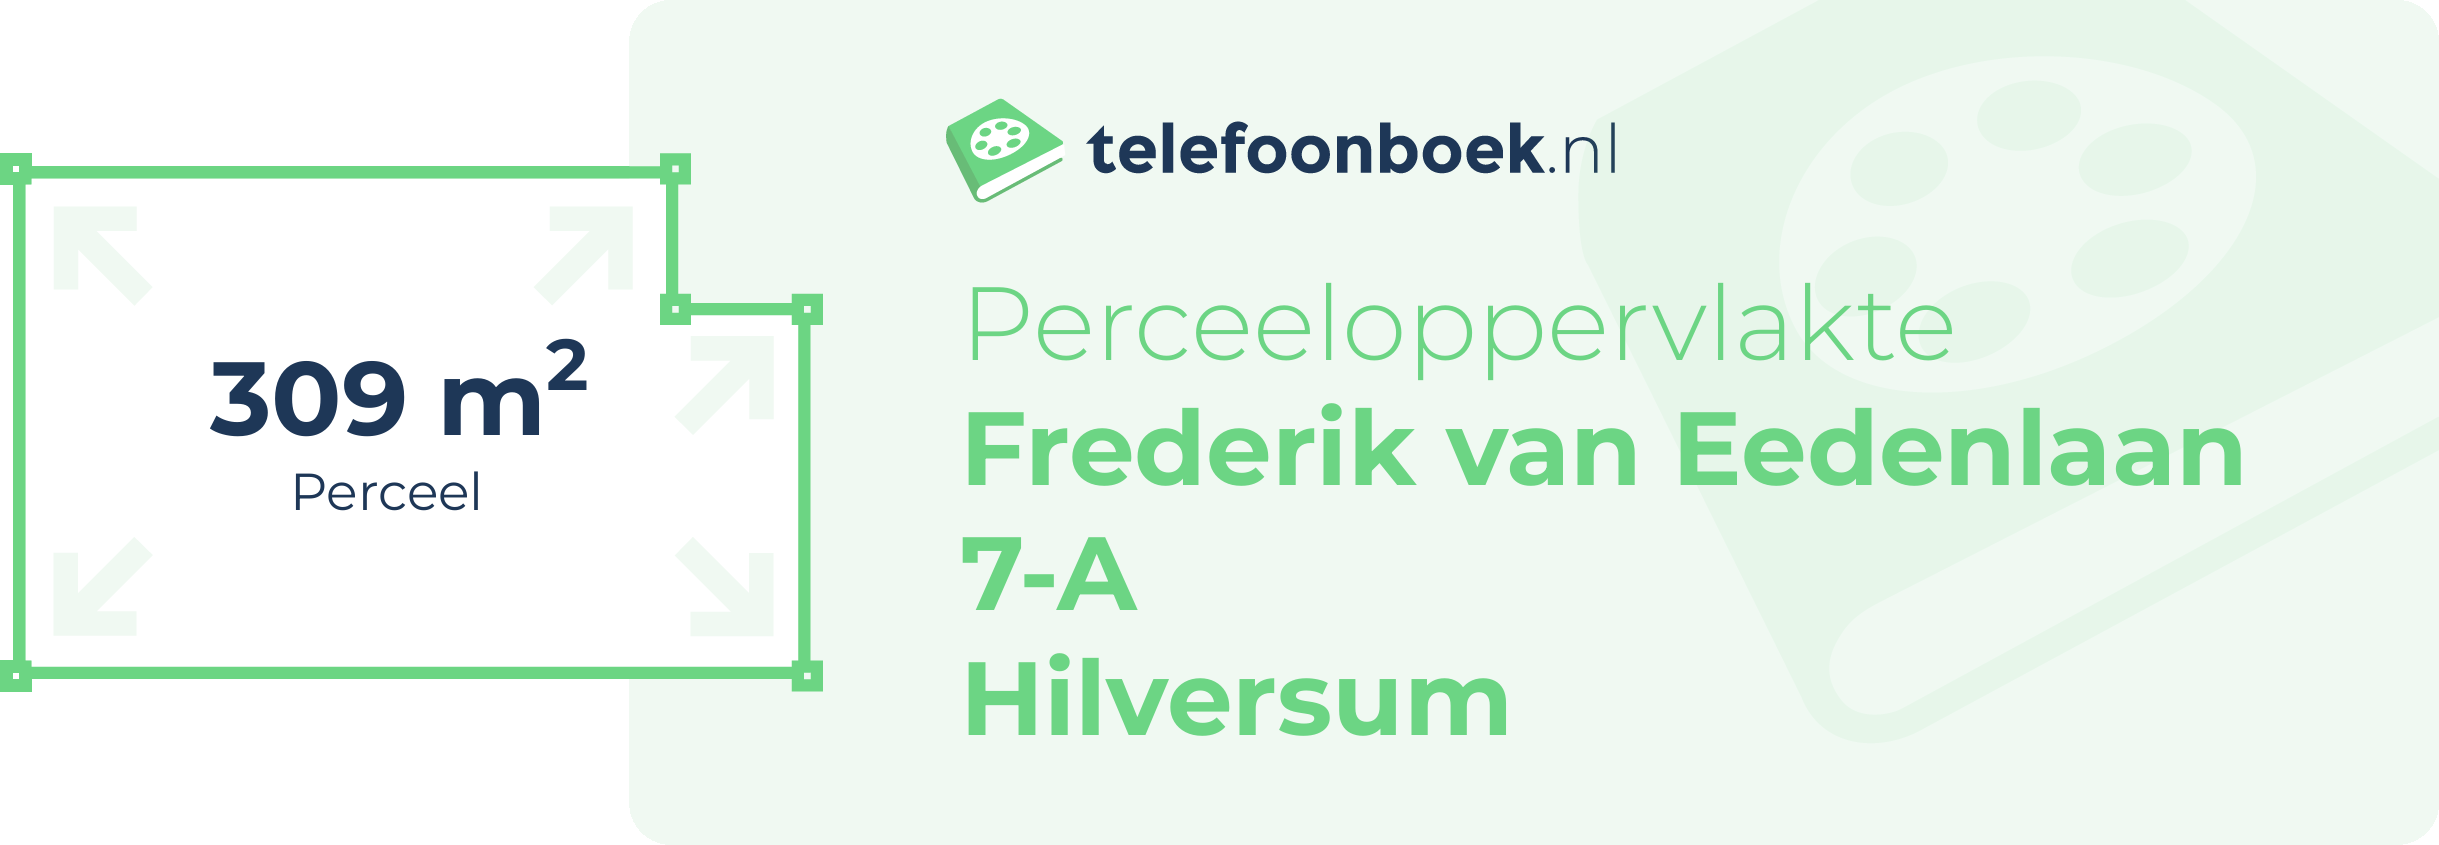 Perceeloppervlakte Frederik Van Eedenlaan 7-A Hilversum